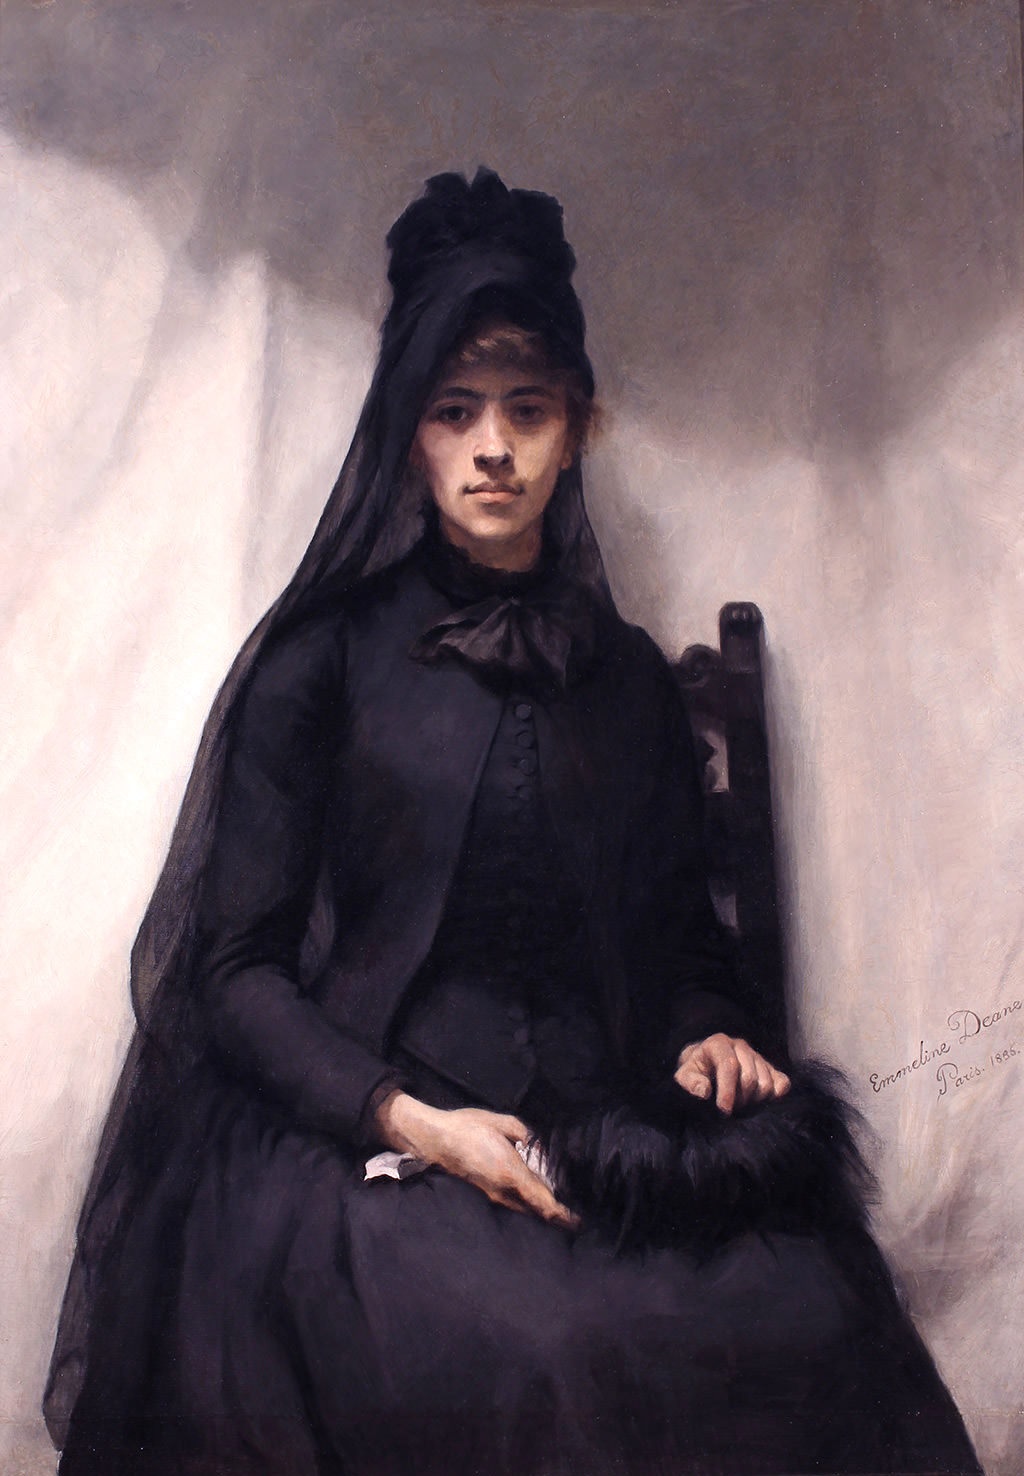 Anna Bilinska by Emmeline Deane - 1886 - 128 x 90.7 cm Victoria Art Gallery